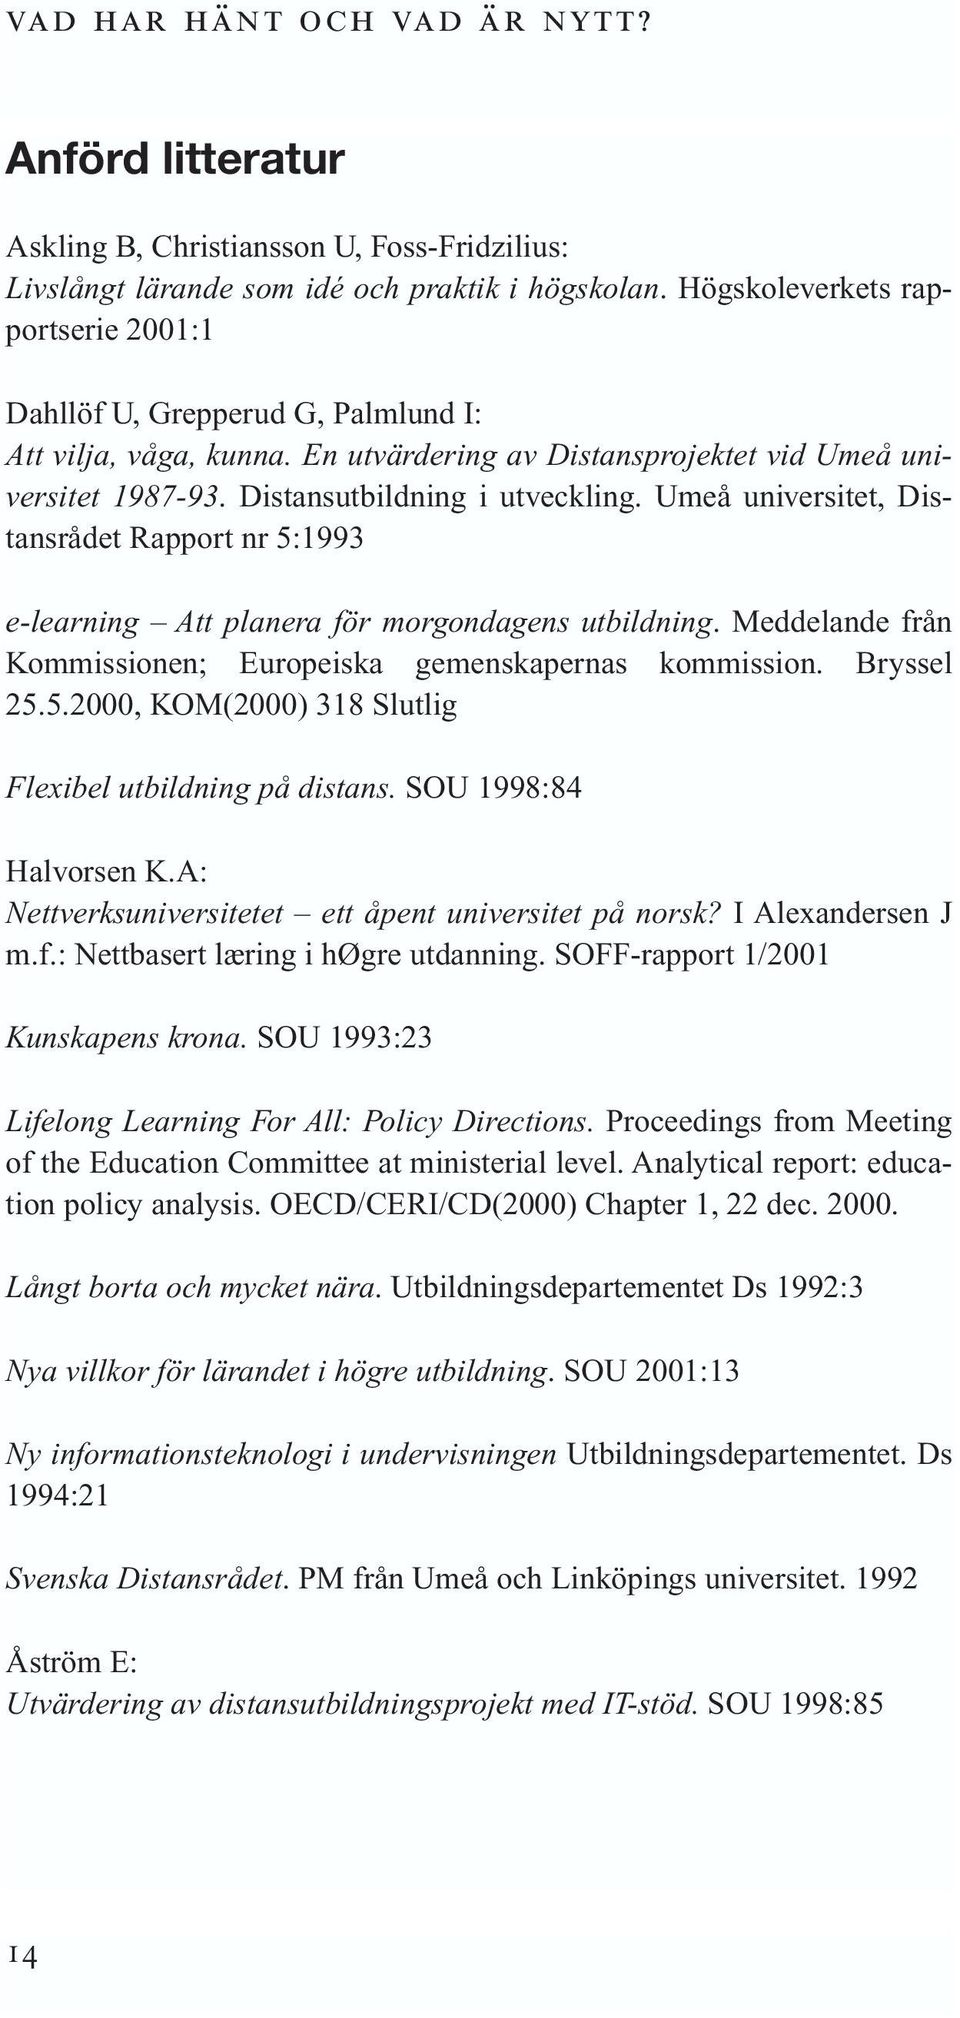 Umeå universitet, Distansrådet Rapport nr 5:1993 e-learning Att planera för morgondagens utbildning. Meddelande från Kommissionen; Europeiska gemenskapernas kommission. Bryssel 25.5.2000, KOM(2000) 318 Slutlig Flexibel utbildning på distans.